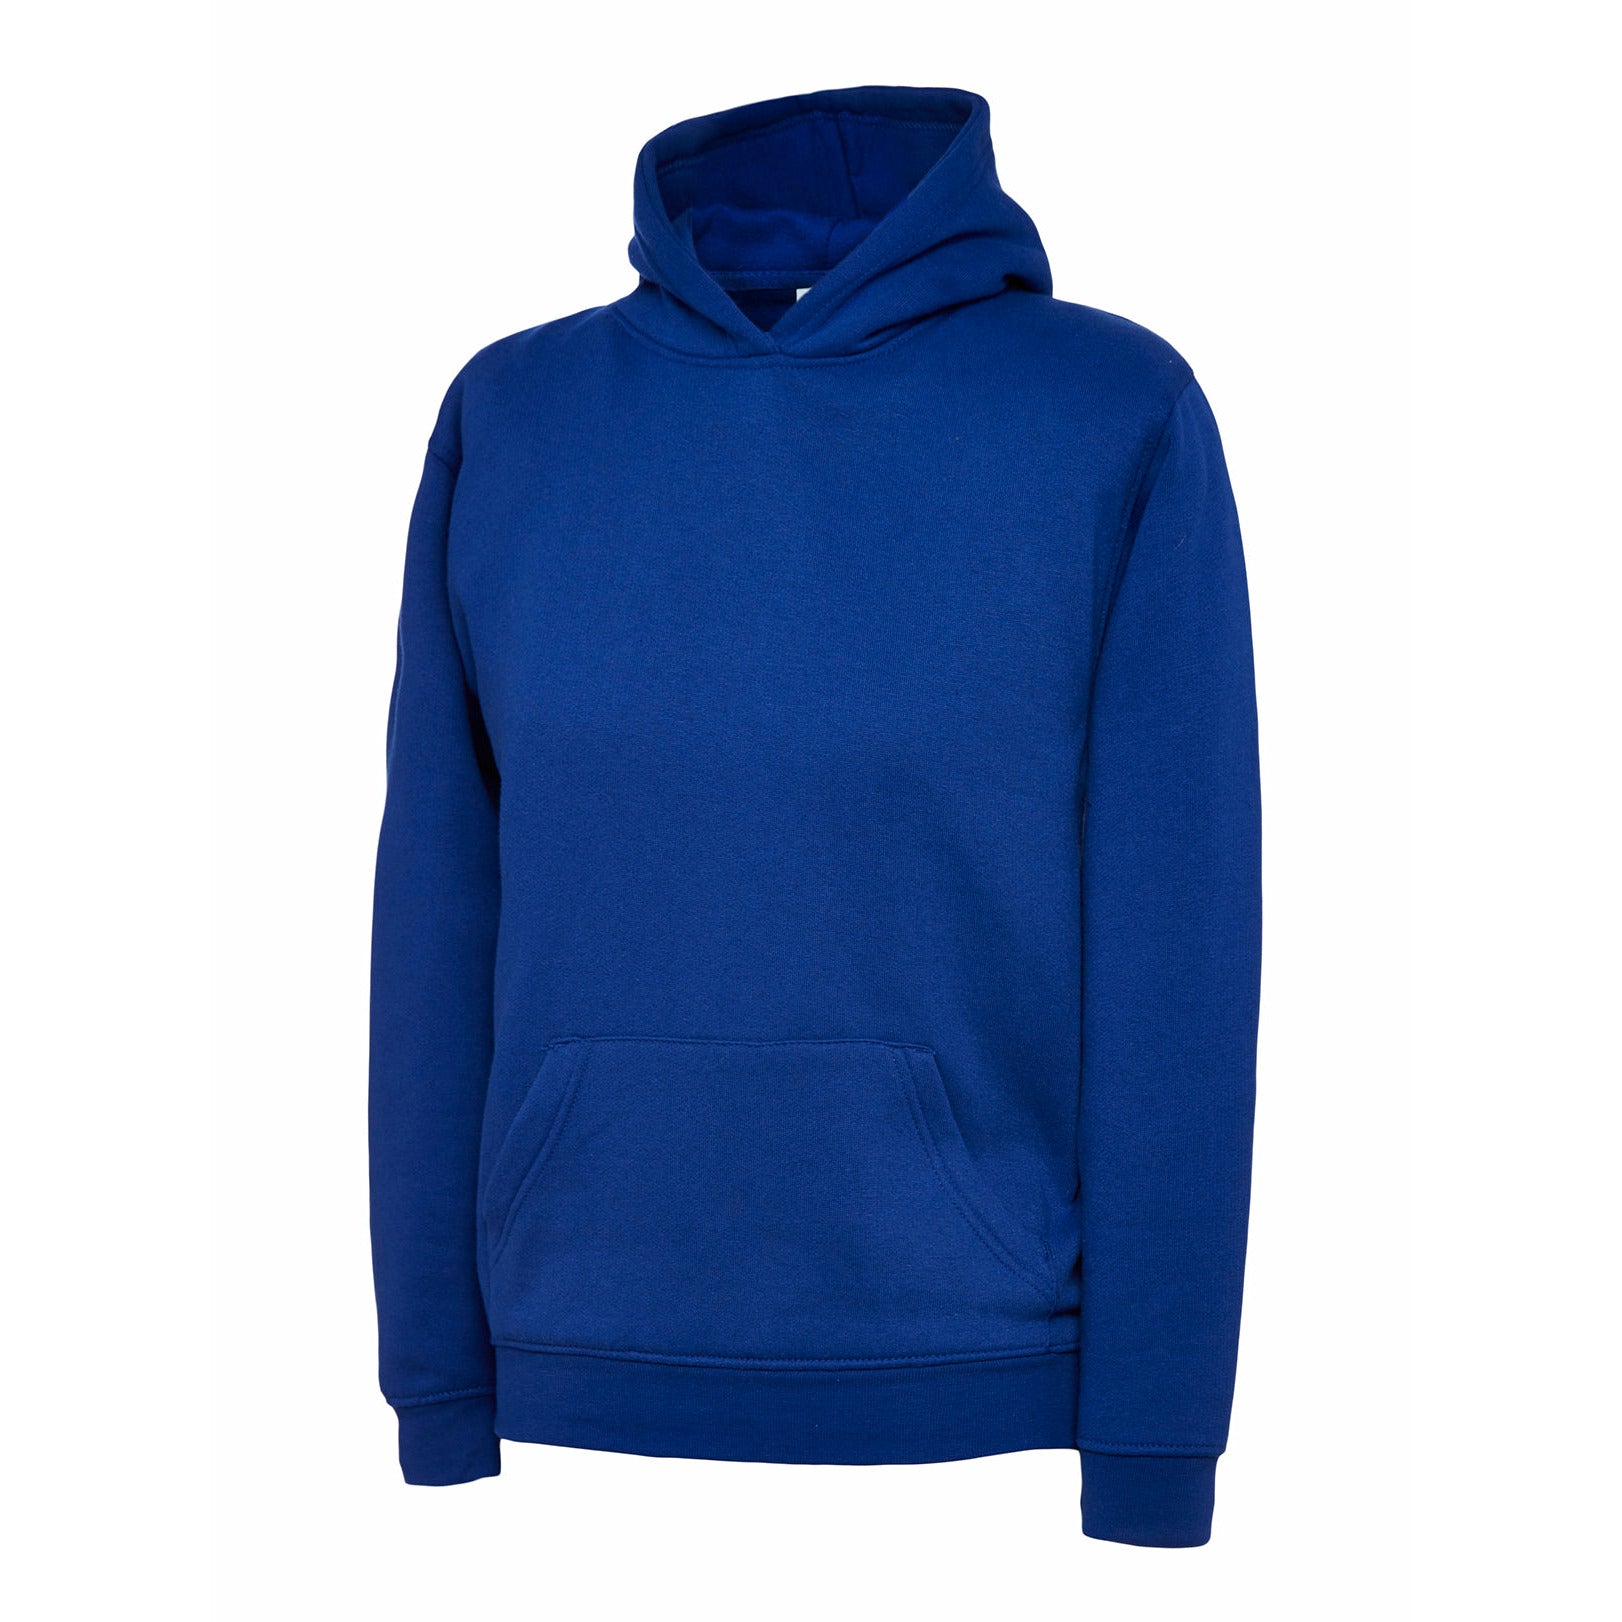 Childrens Hooded Sweatshirt (5 - 13 YRS) Royal Blue